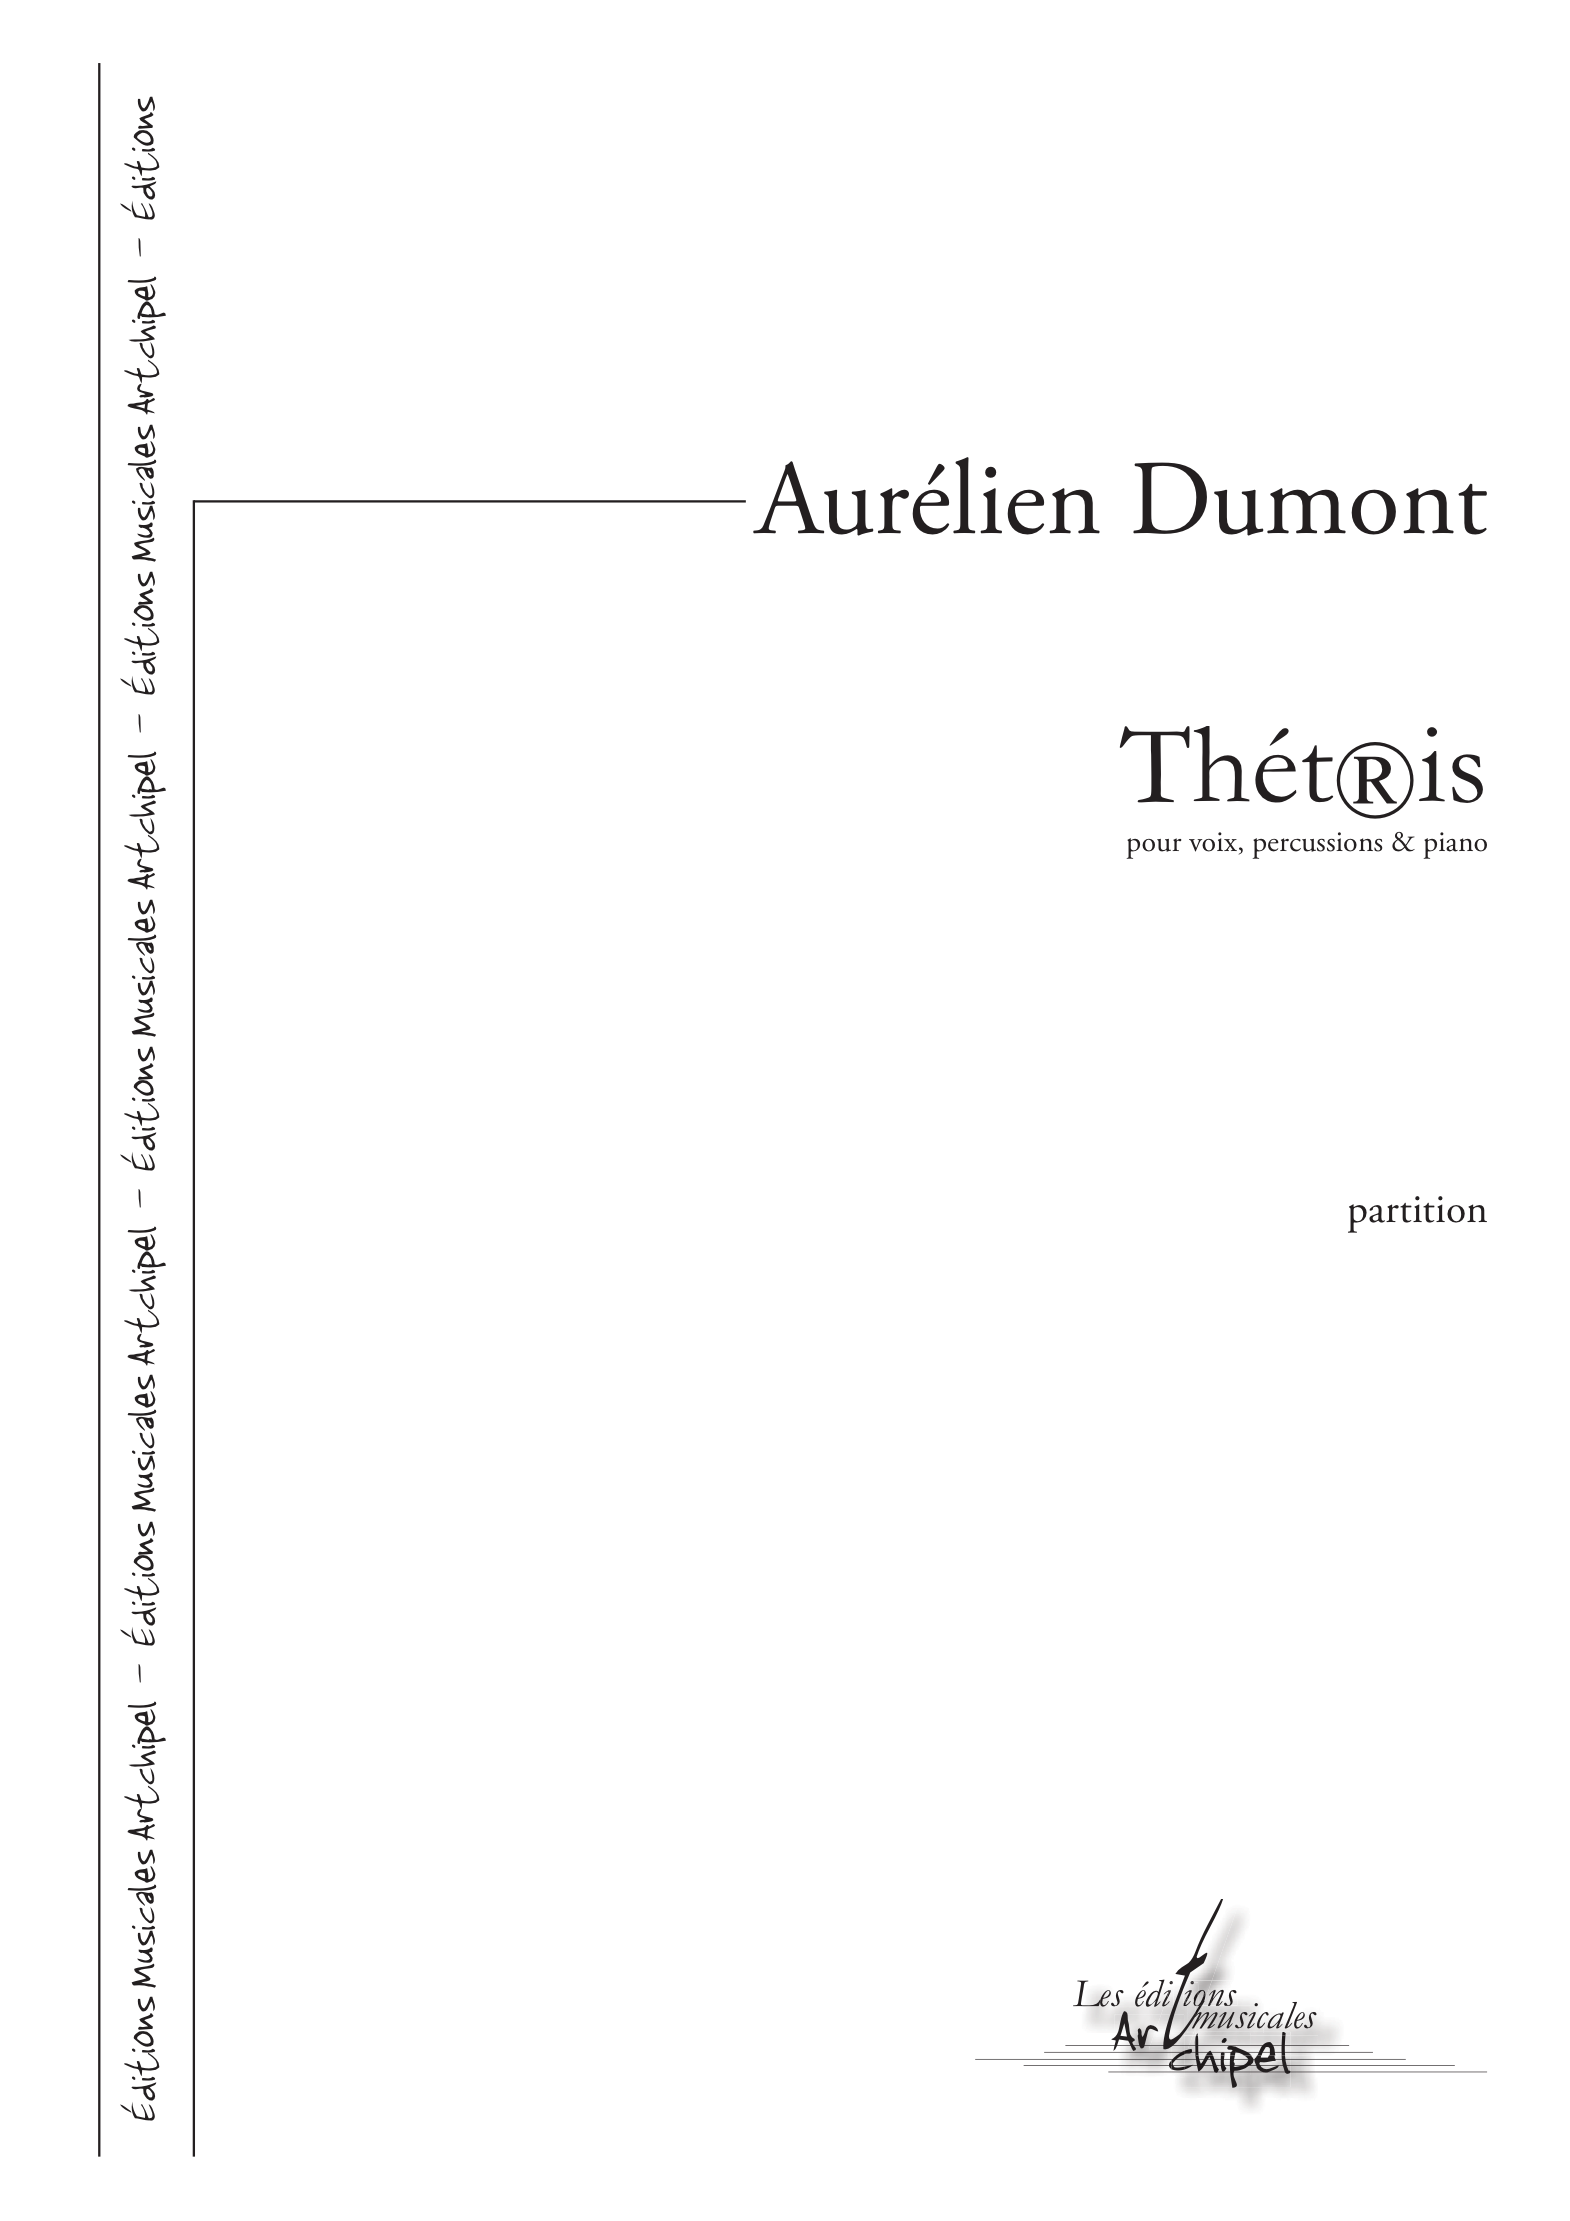 thetris DUMONT Aurelien A4 z